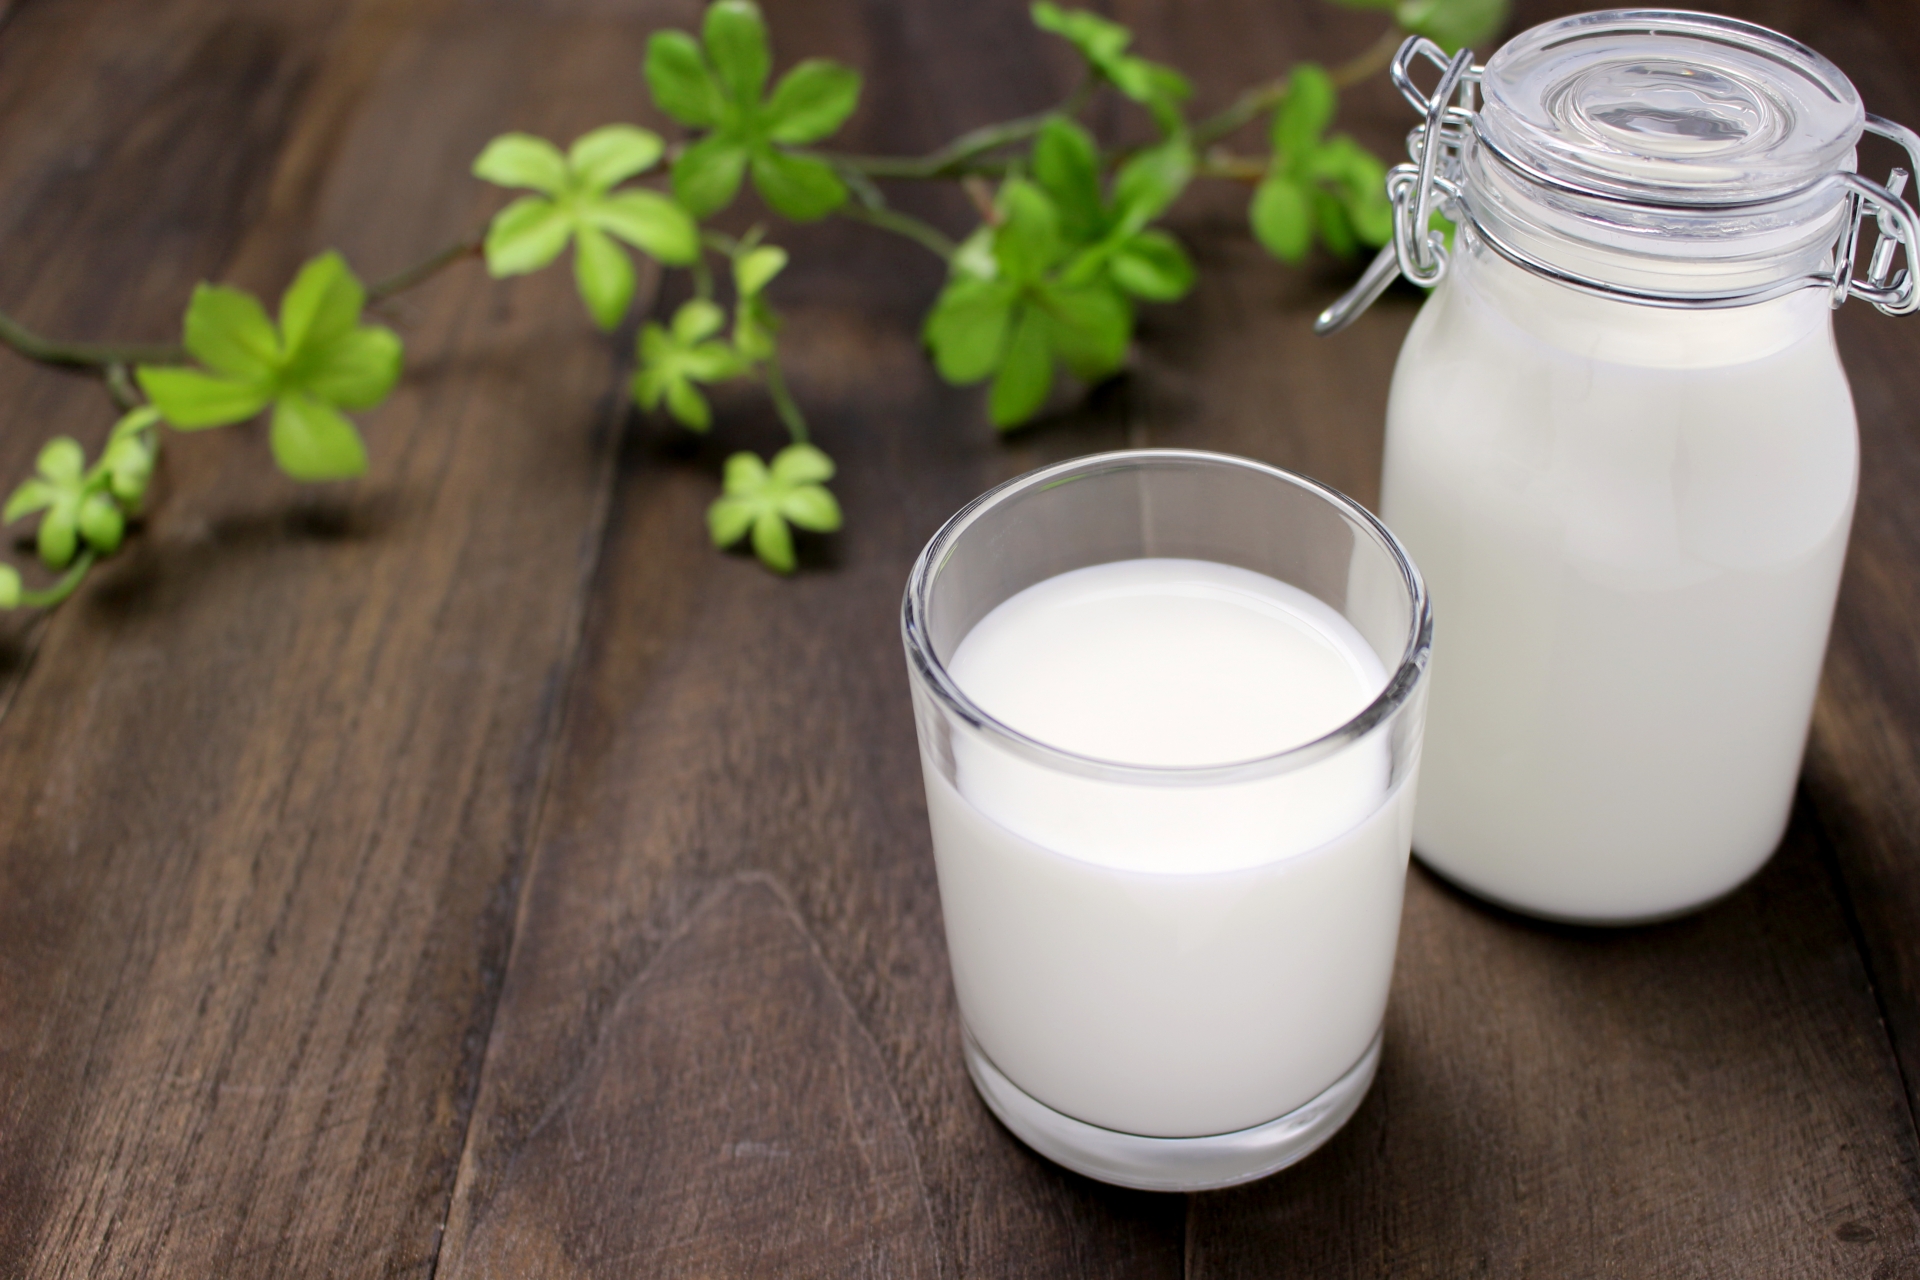 鈣是乳製品中常含的成分，如牛奶和酸奶。